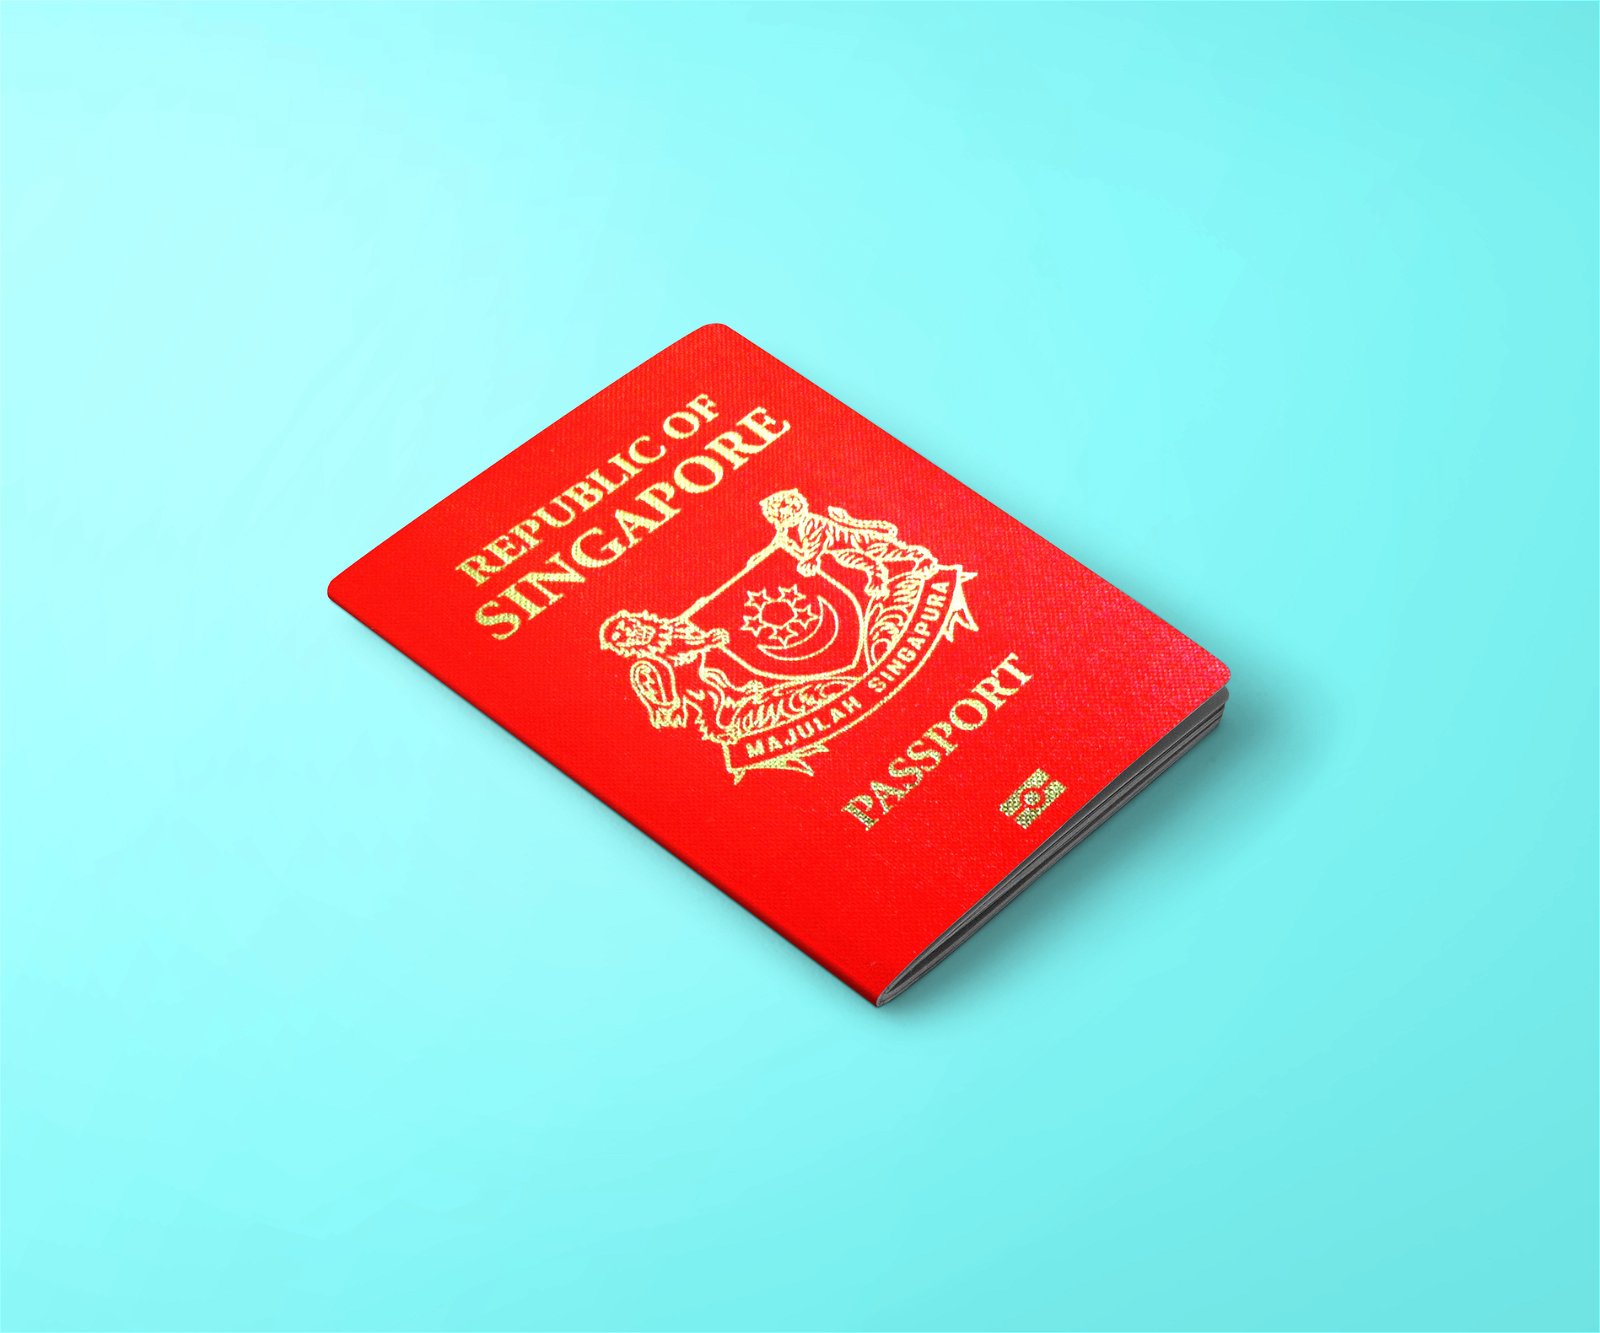 паспорт сингапура